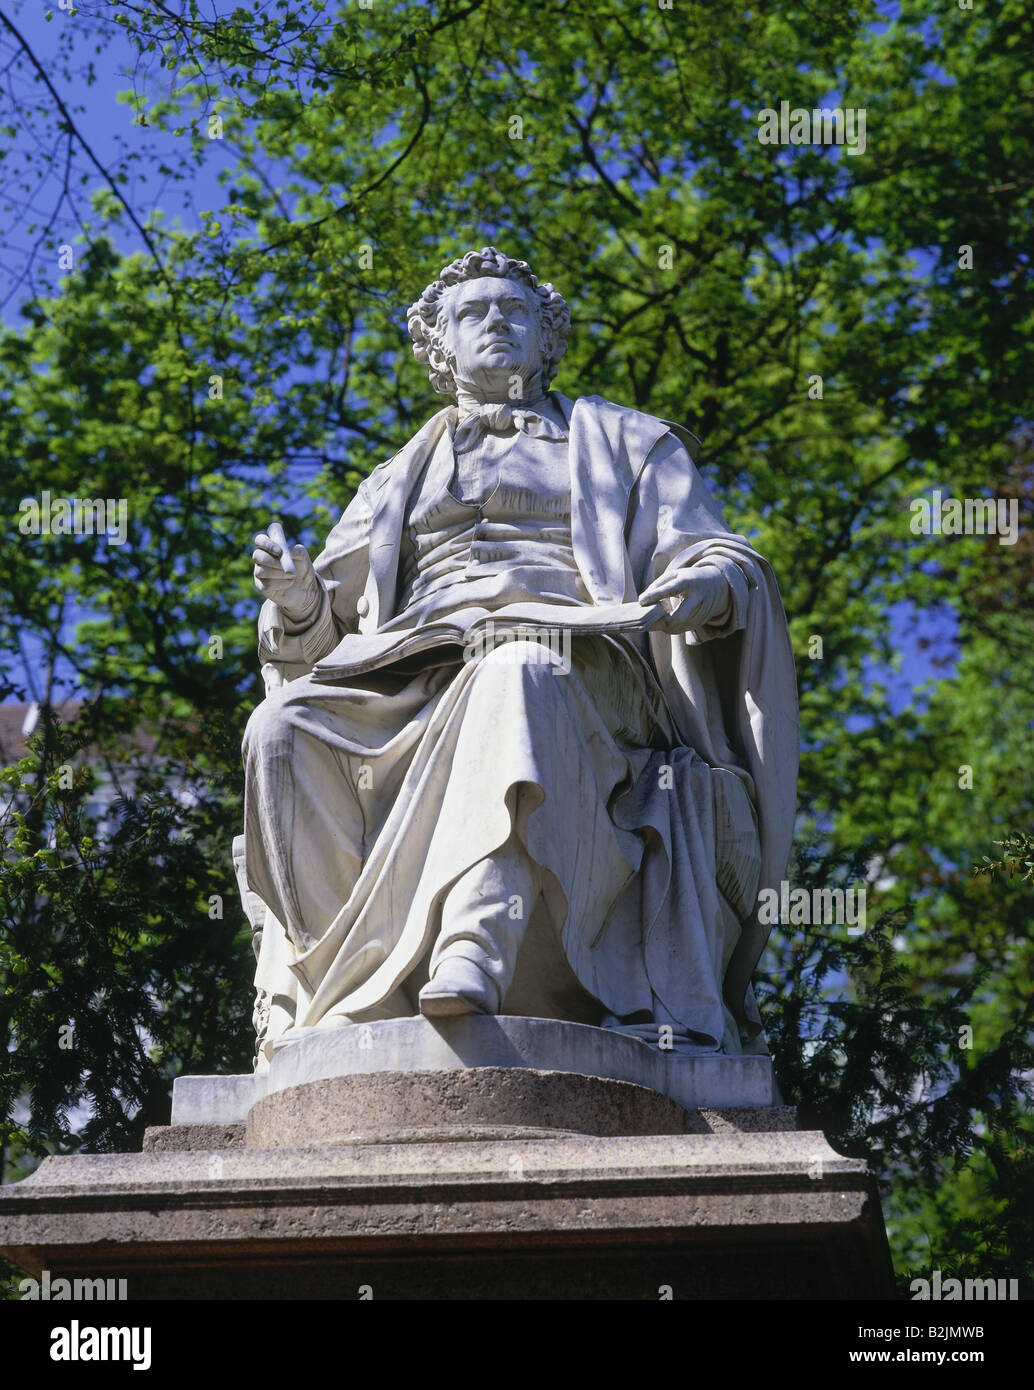 Schubert, Franz, 31.1.1797 - 19.11.1828, Austrian composer, memorial, statue, built: 1872, sculptor: Carl Kundmann, Stadtpark, Vienna, Austria, Stock Photo